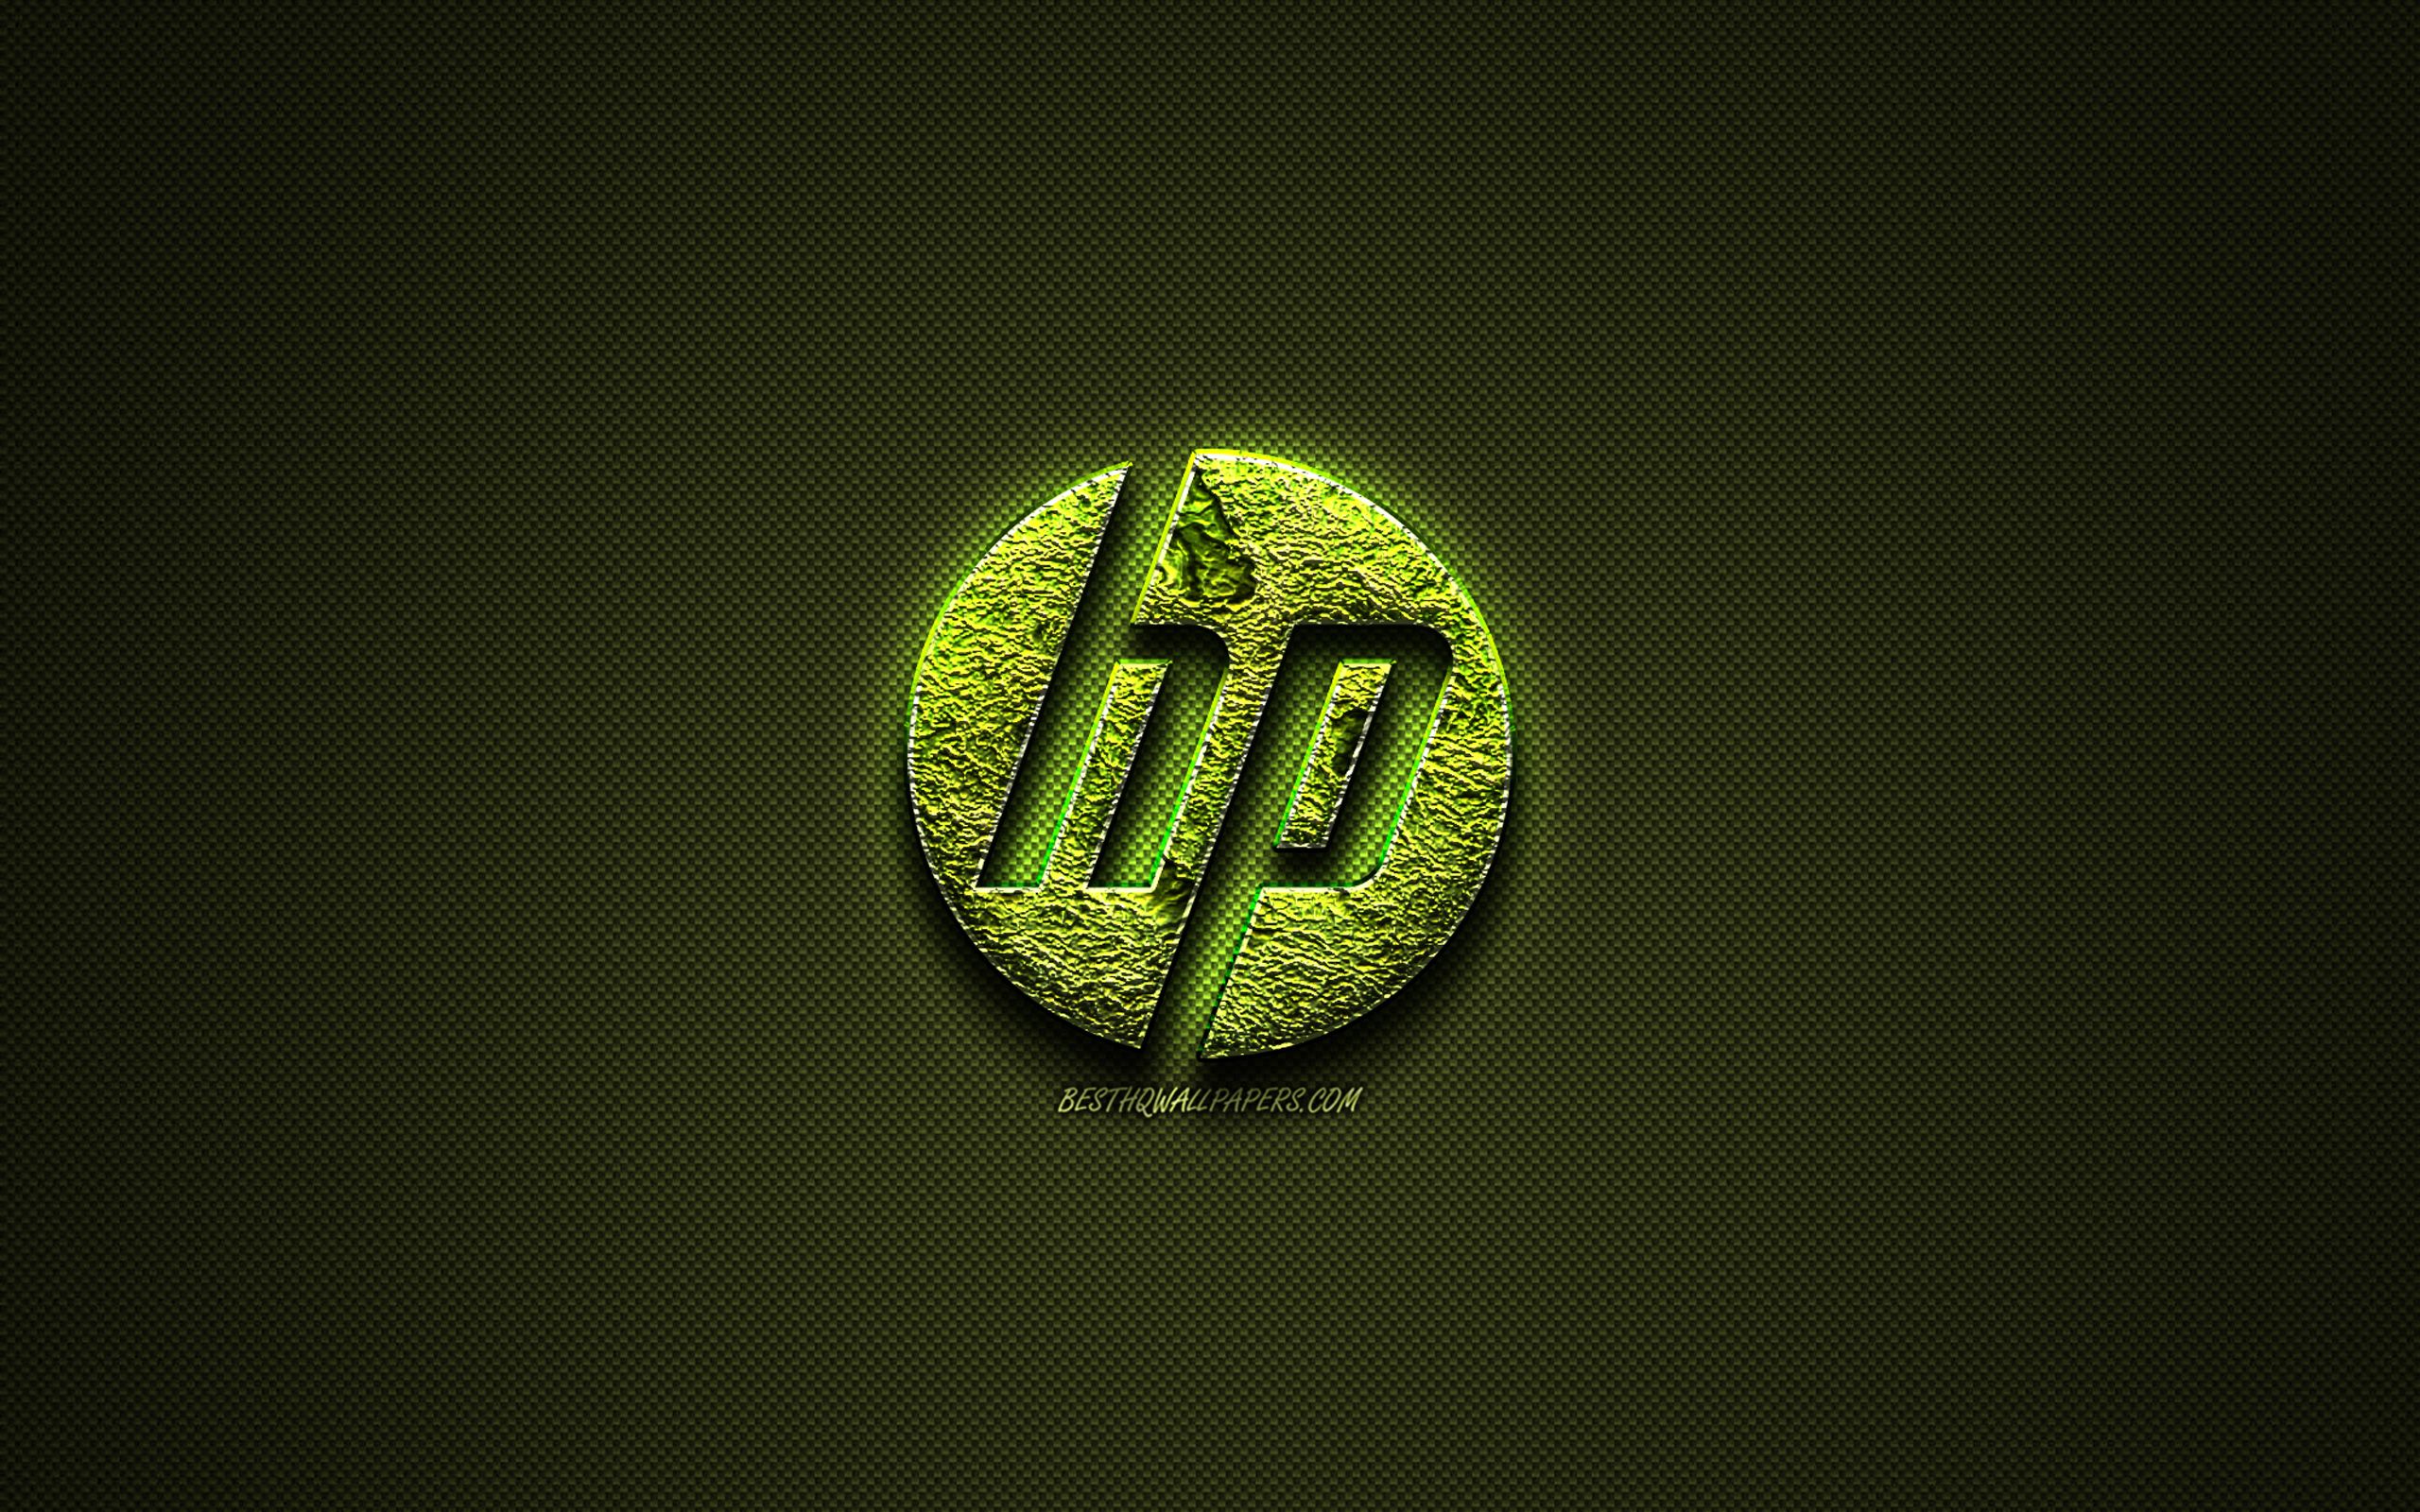 Download Wallpaper HP Logo, Hewlett Packard, Green Creative Logo, Floral Art Logo, HP Emblem, Green Carbon Fiber Texture, HP, Creative Art For Desktop With Resolution 2560x1600. High Quality HD Picture Wallpaper